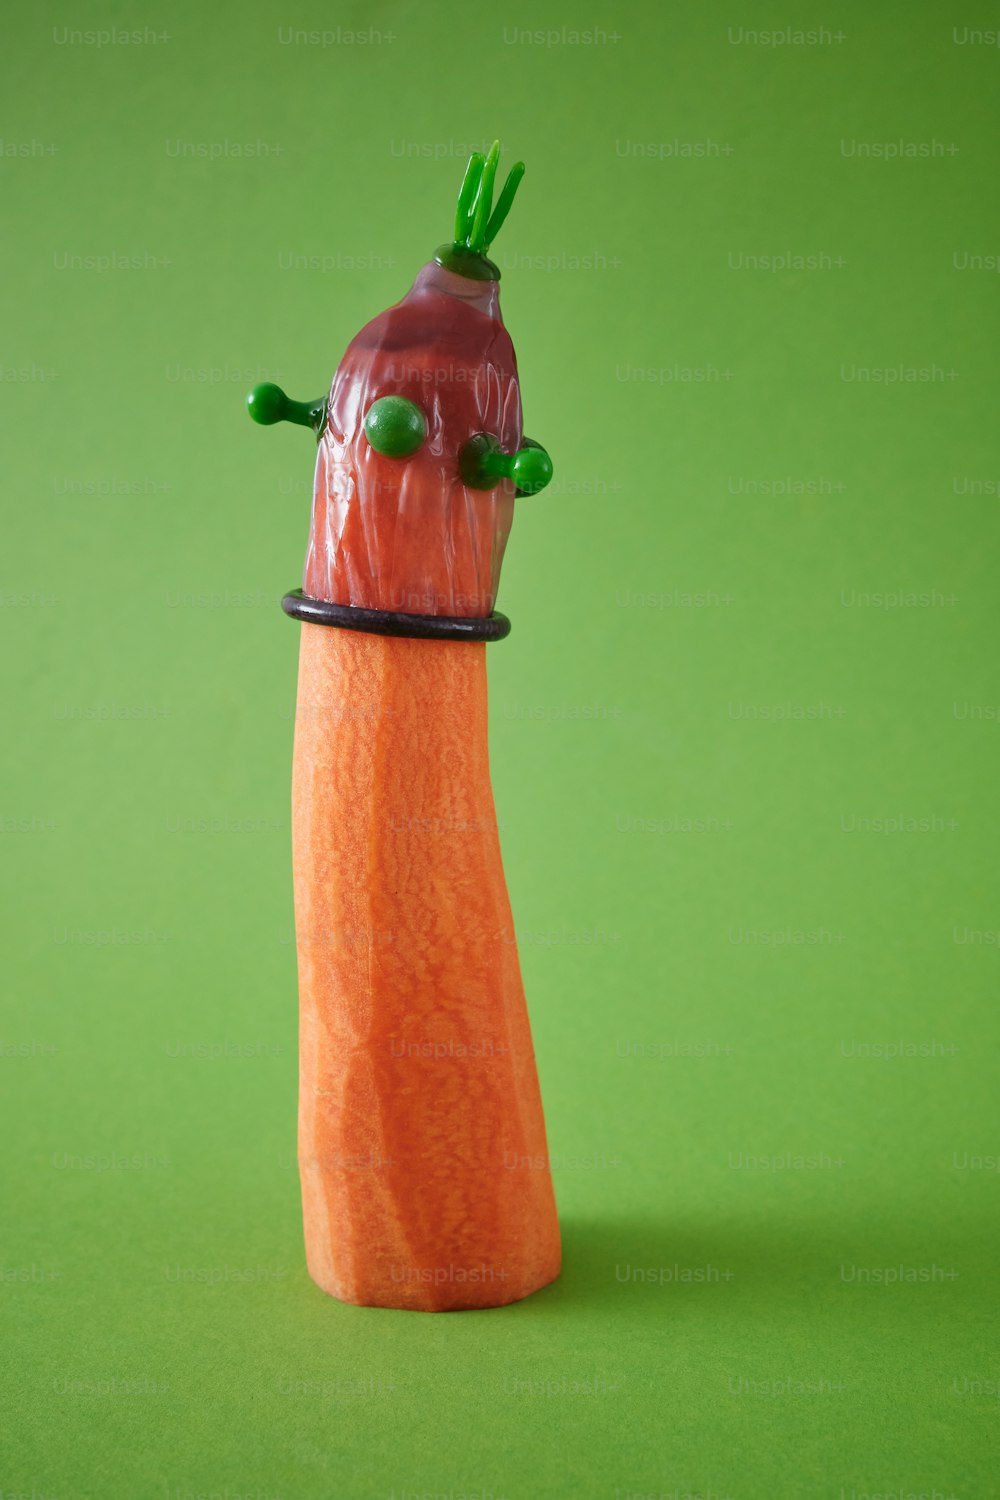 eine Karotte, aus der ein grüner Stiel herausragt